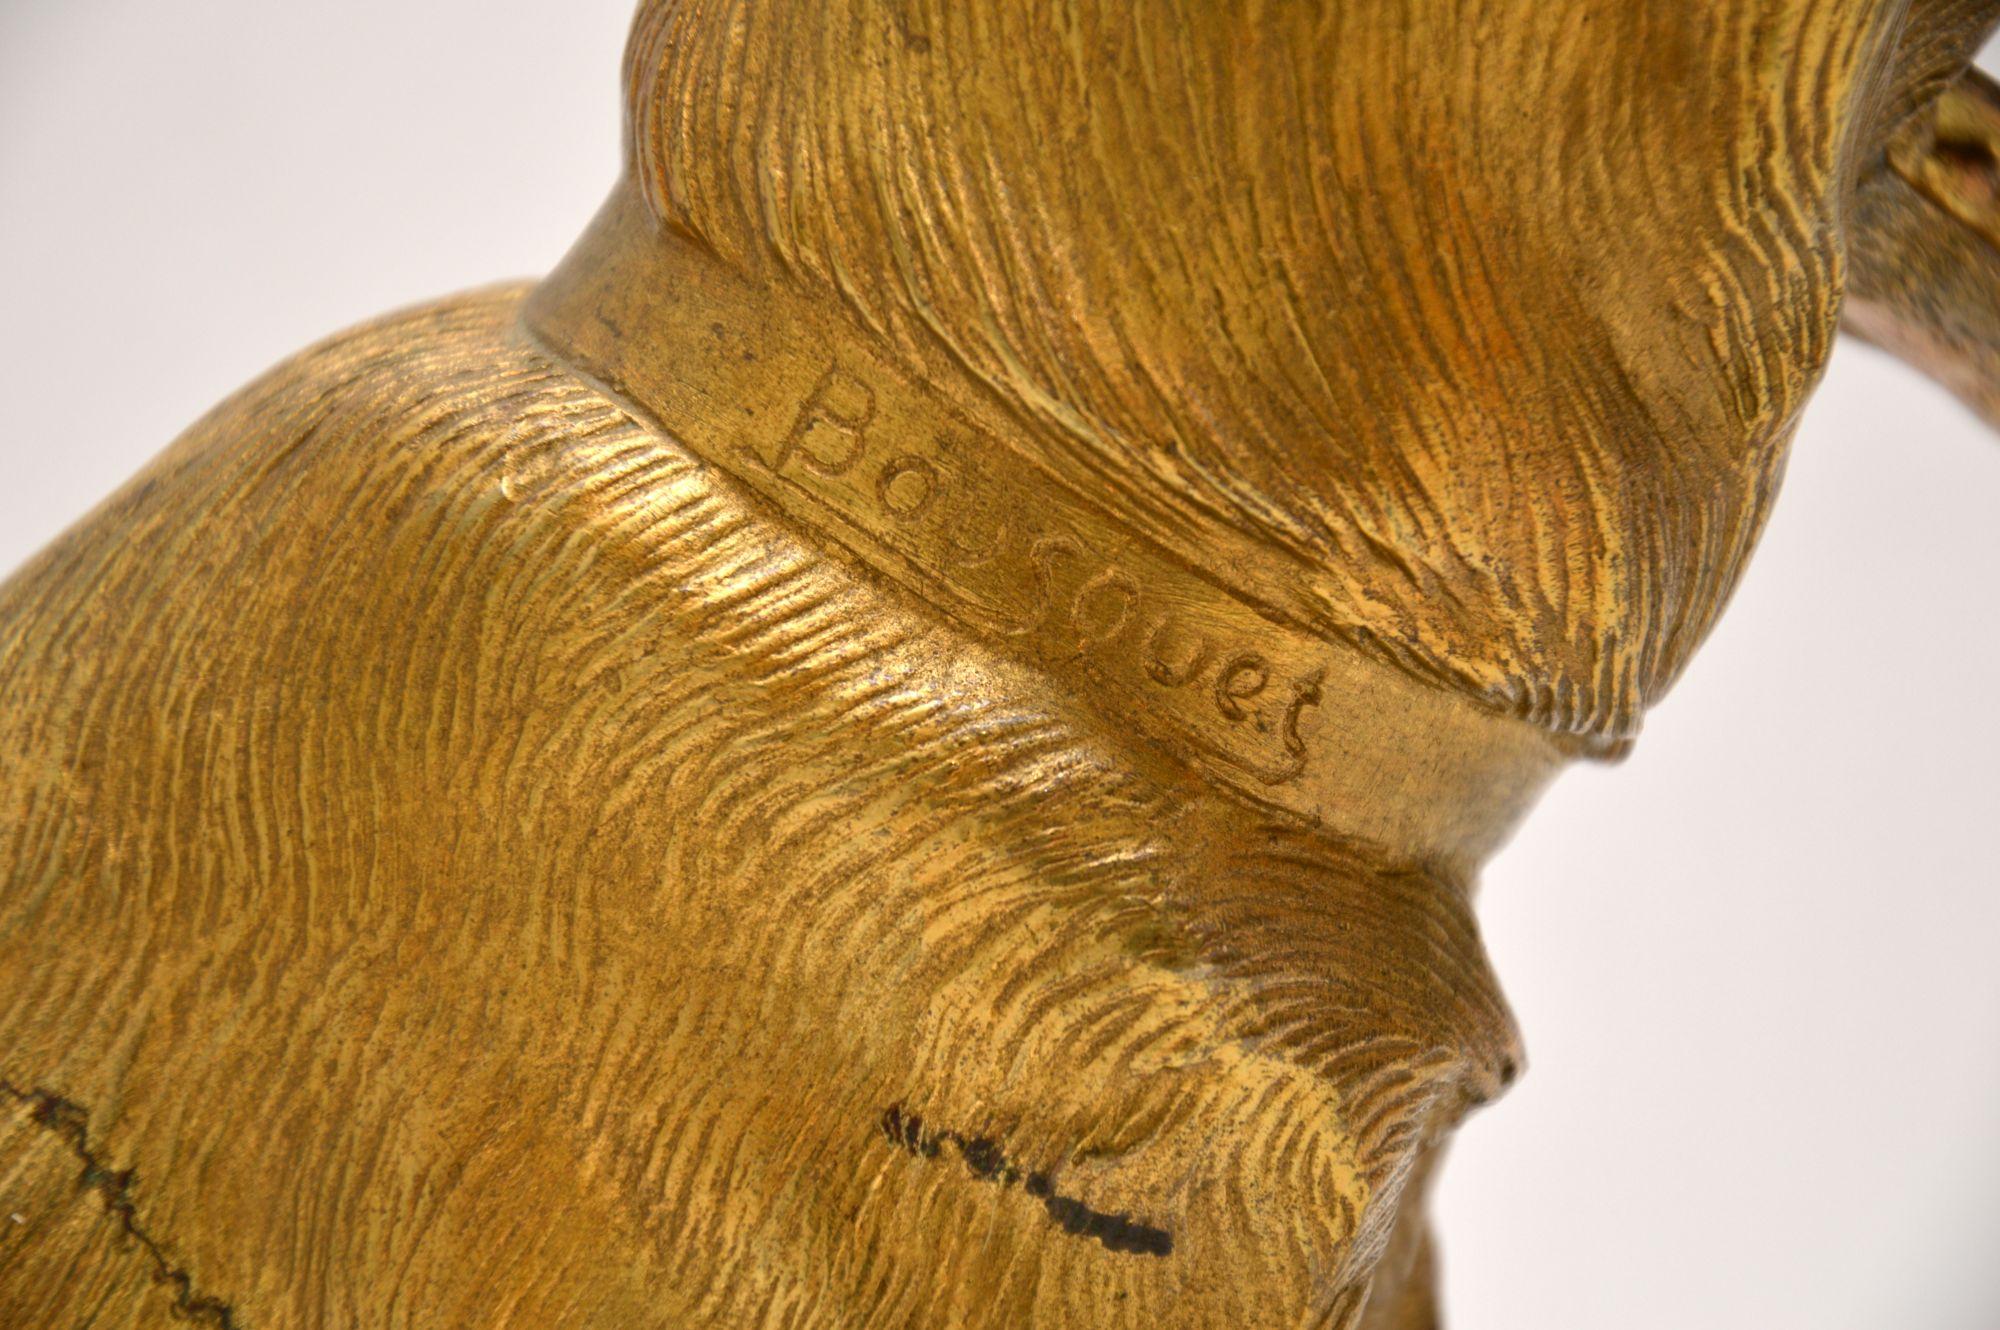 Large Antique Gilt Bronze Dog Sculpture by Robert Bousquet 1